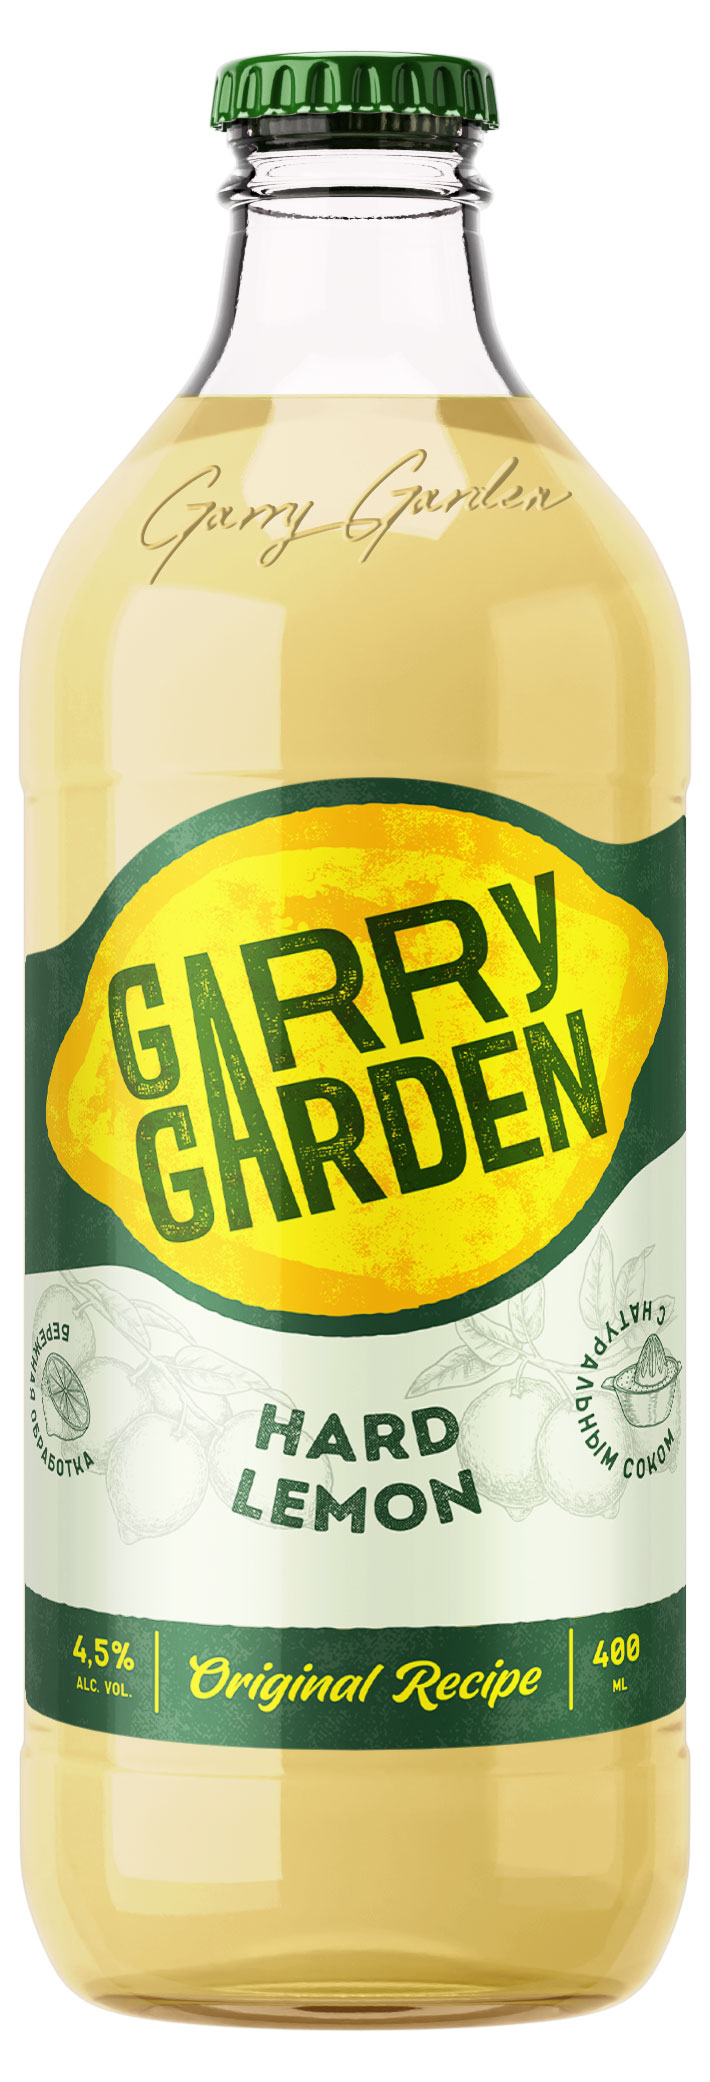 Пивной напиток Garry garden Лимон 4,5%, 400 мл